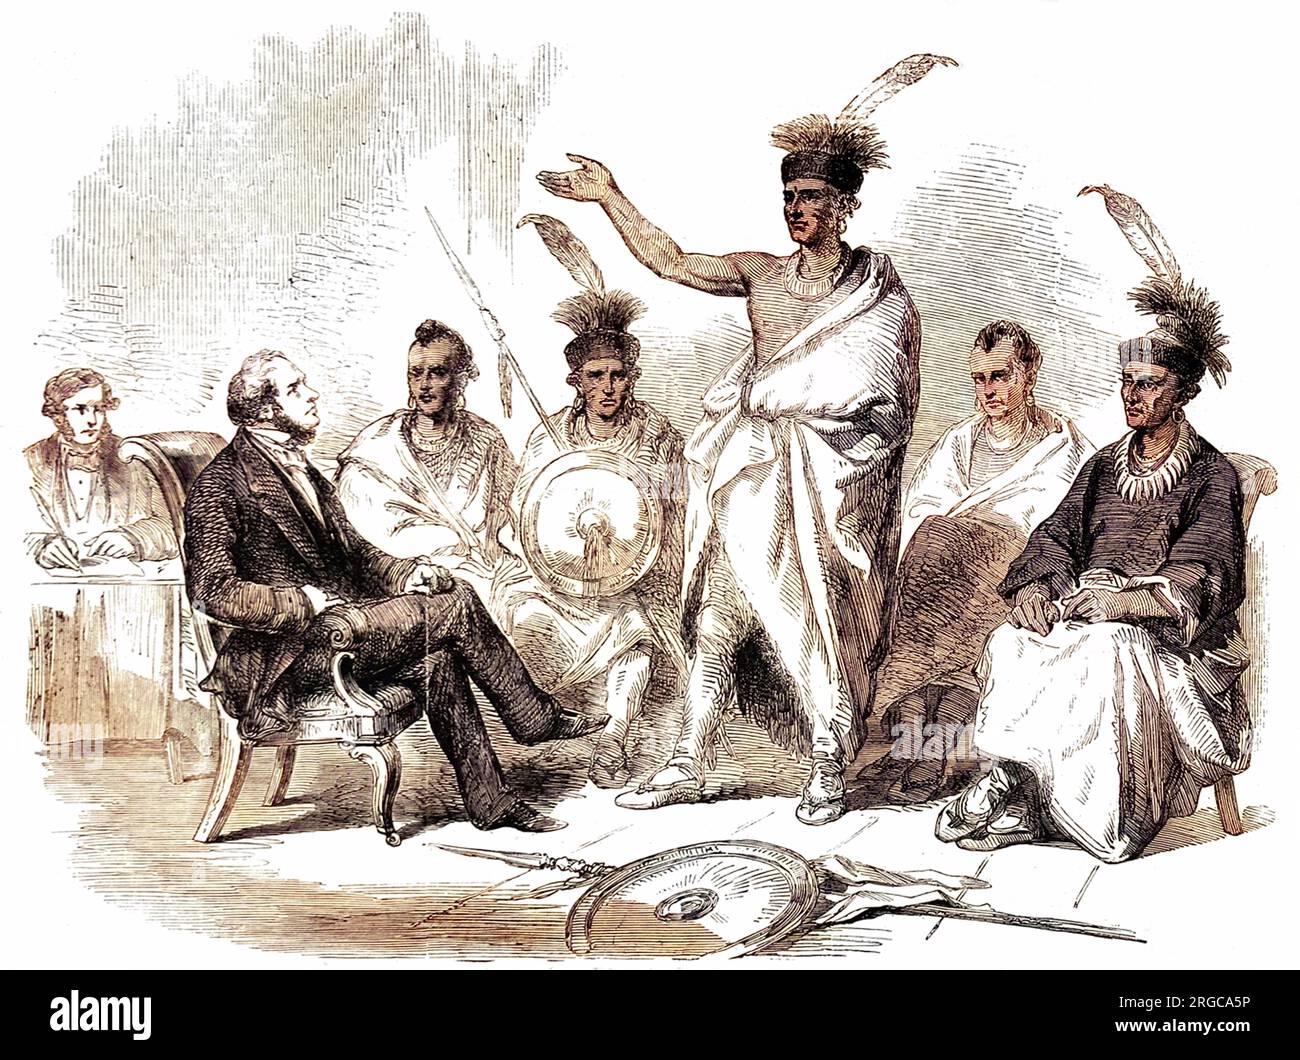 Die indianischen KAW appellieren an den US-Kommissar für indische Angelegenheiten, ihr Land vor Siedlern zu schützen, 1857. Die Kaw, die in Kansas lebten, tragen mohikanische Frisuren, Kopfschmuck, Schals und runde Schilde. Stockfoto